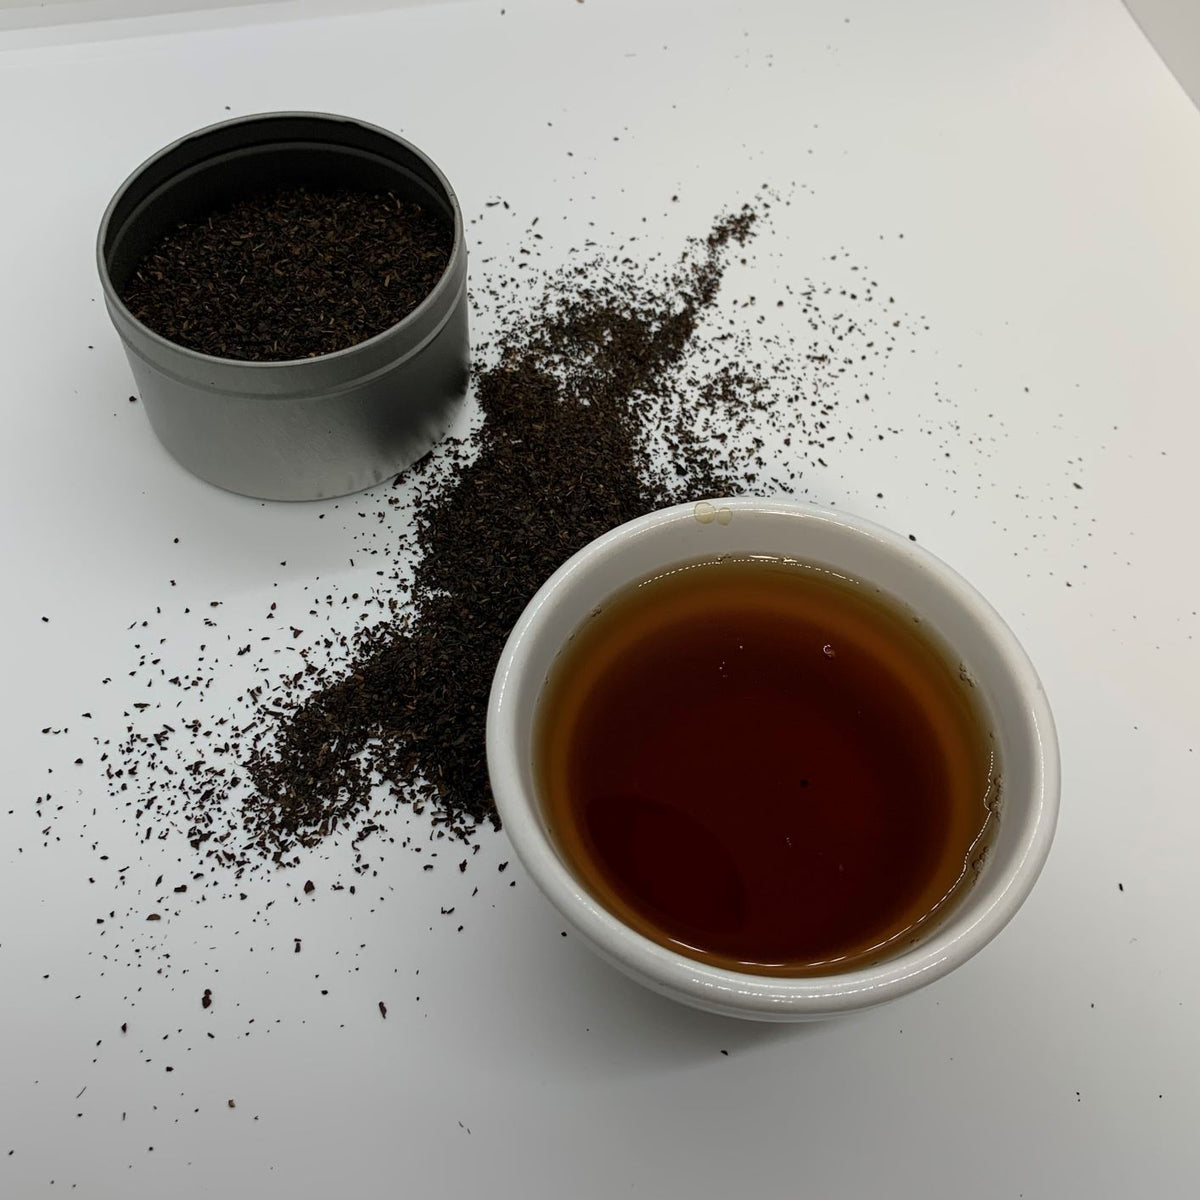 Traditional Black Loose Leaf Tea